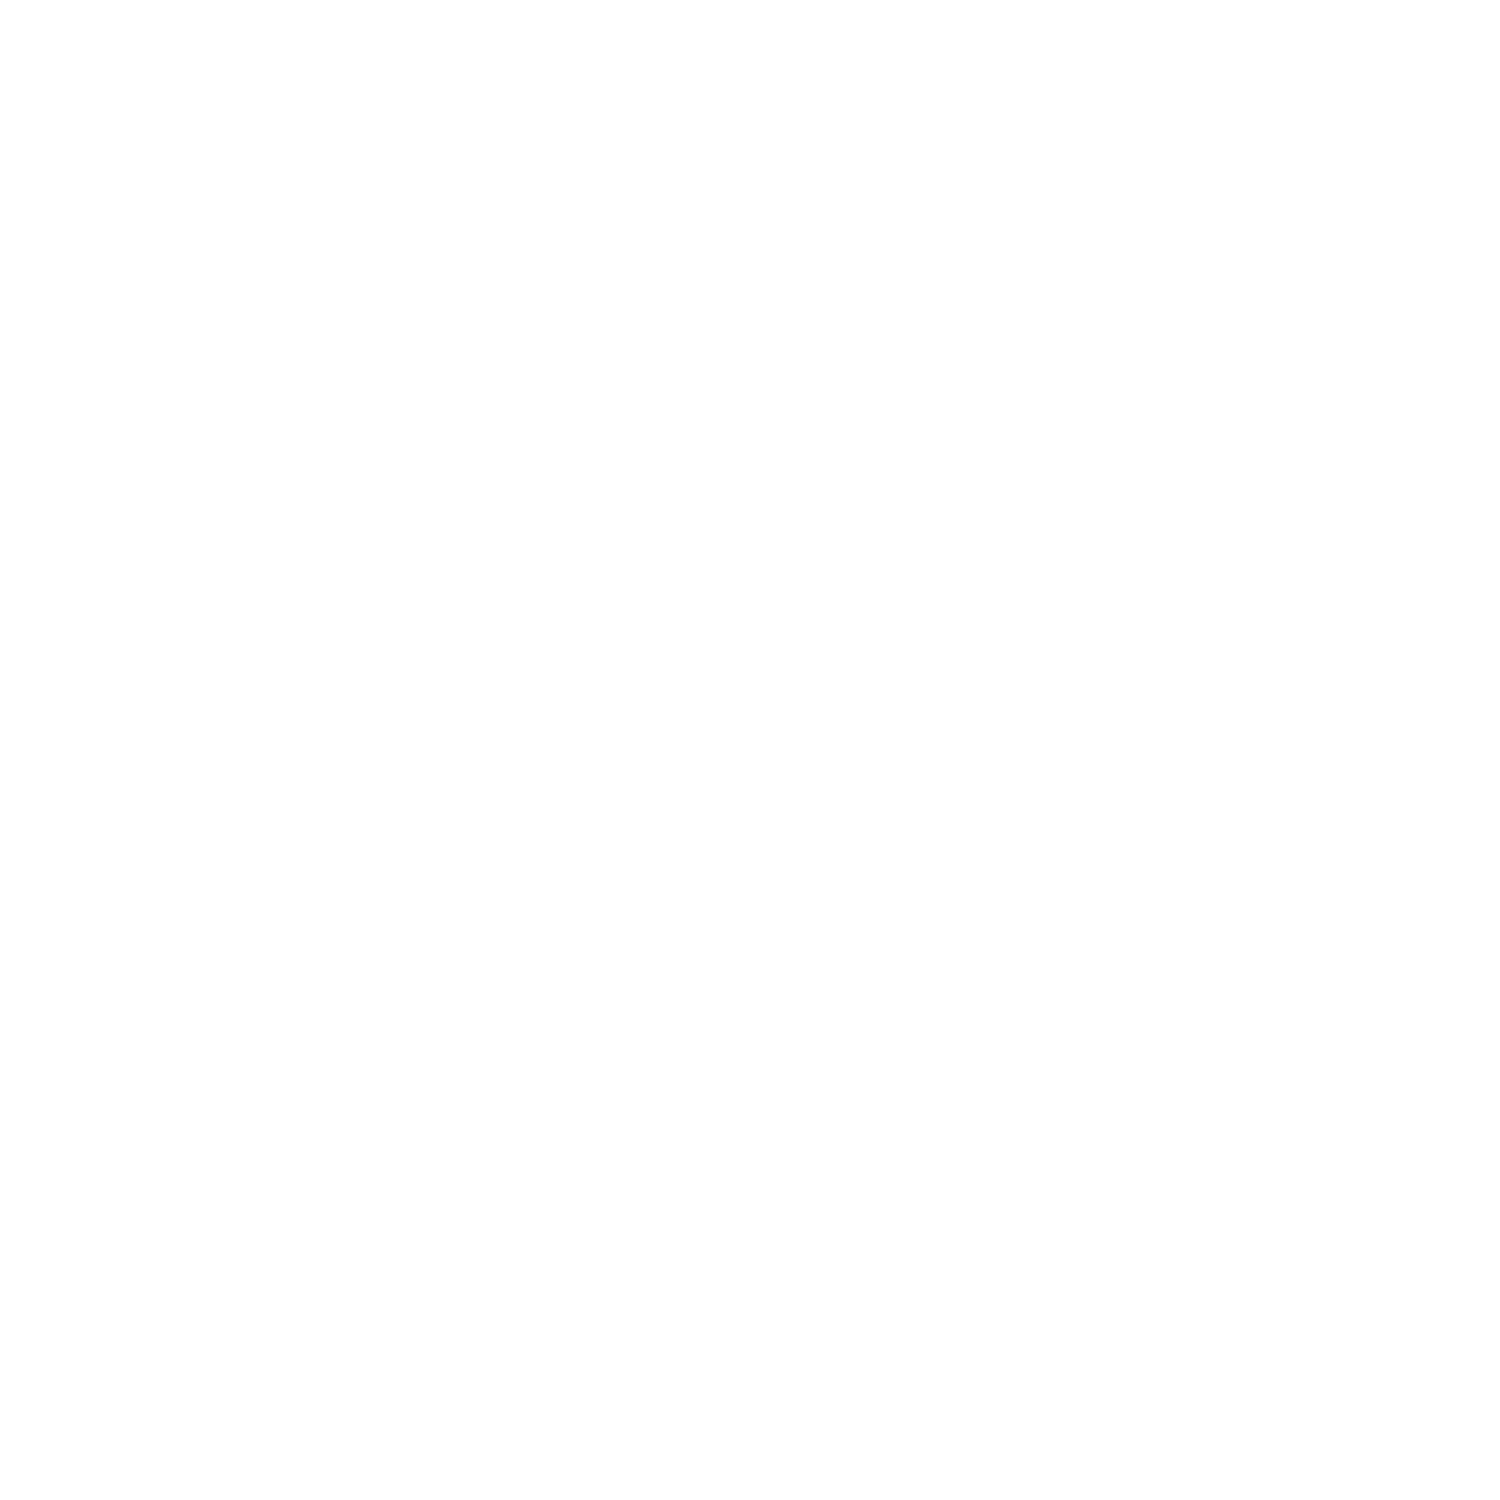 Tallman Bible Church